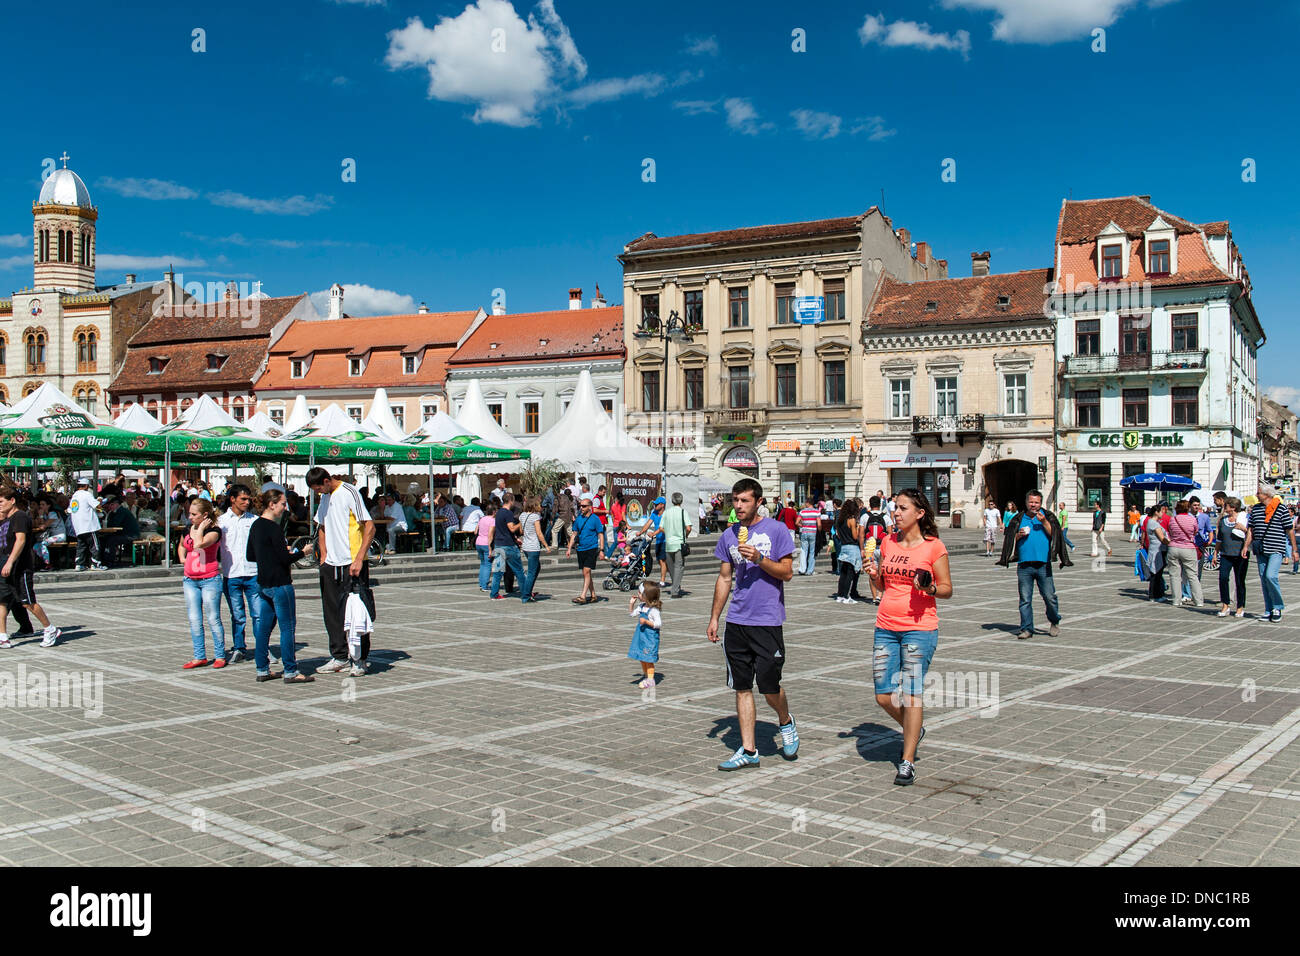 Los peatones en Brașov Piața Sfatului (Plaza del Consejo), en el casco antiguo de la ciudad de Brasov, una ciudad de la región rumana de Transilvania. Foto de stock